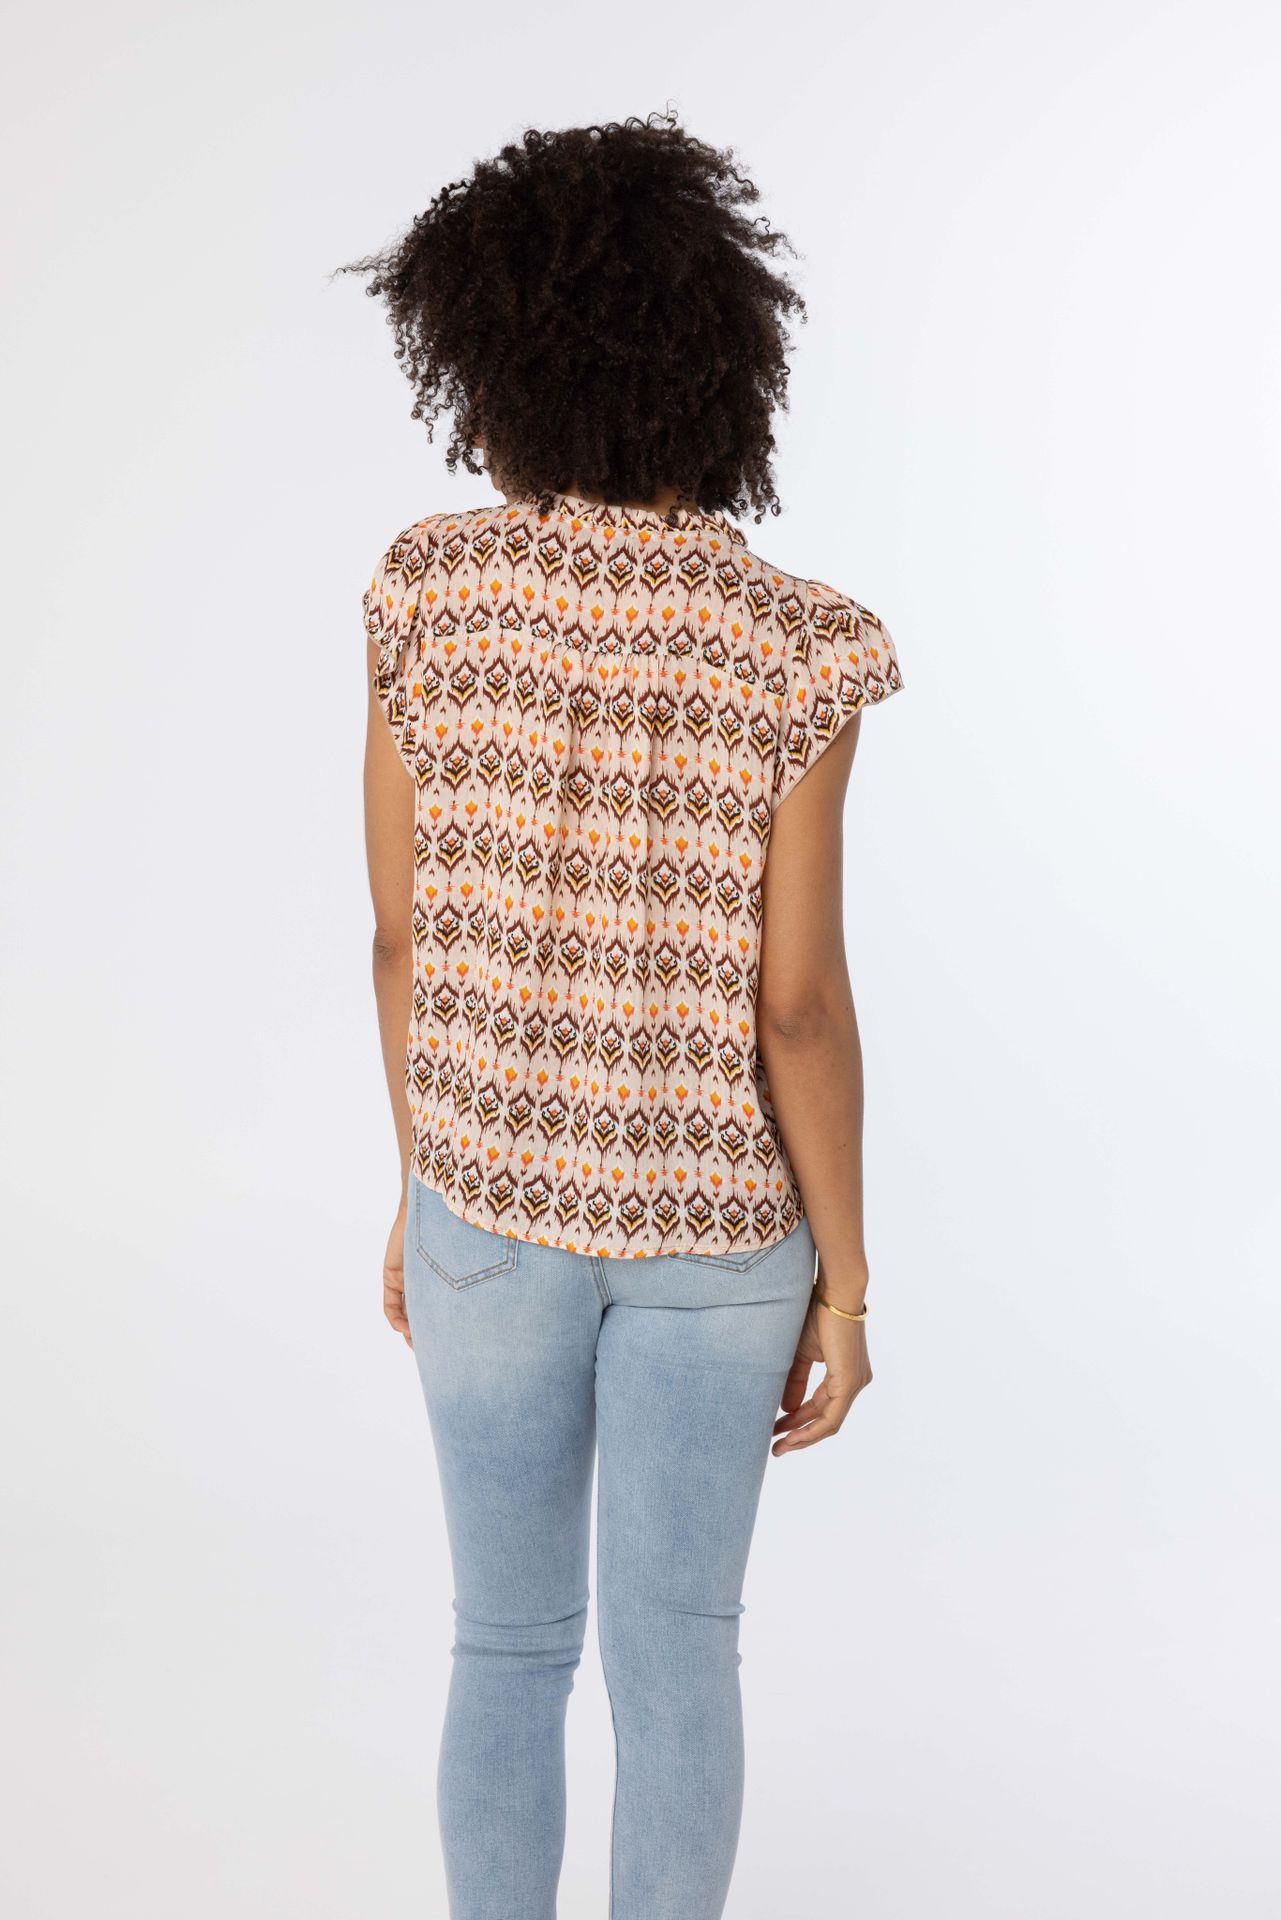 Norah Meerkleurige blouse met korte mouwen ecru multicolor 214062-122